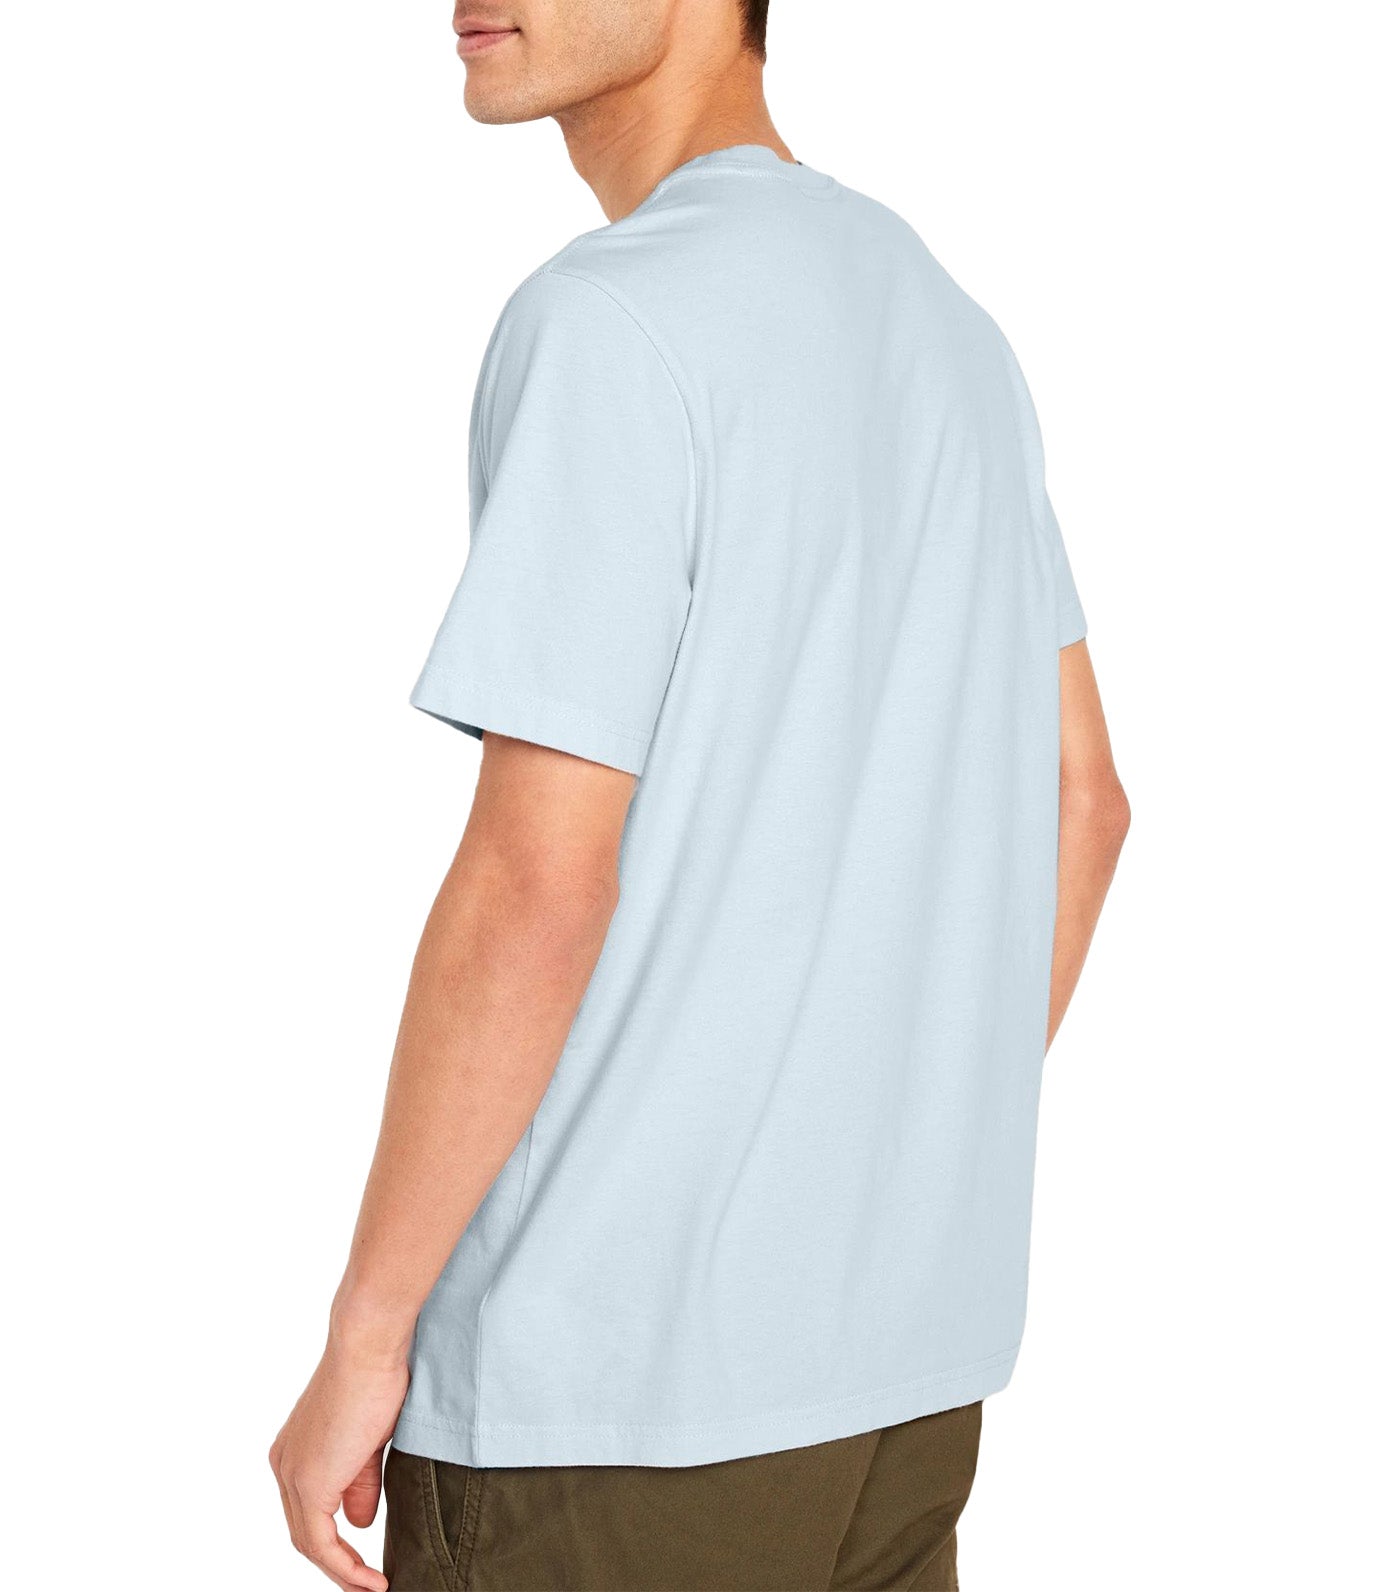 Crew-Neck T-Shirt for Men Microchip